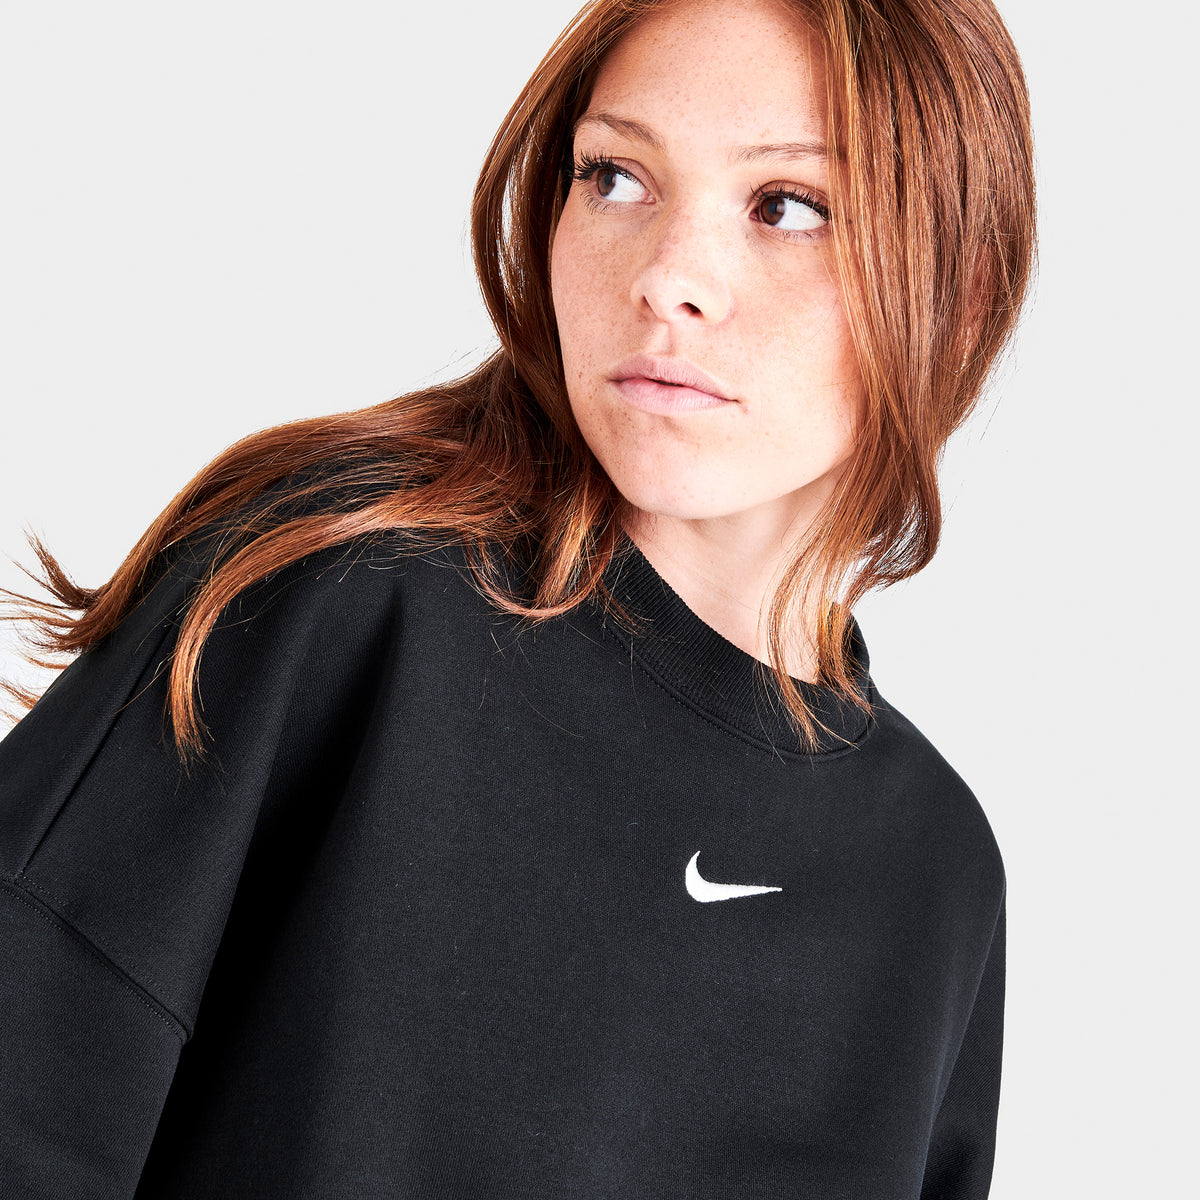 Nike Women's Sportswear Phoenix Fleece Oversized Crew Sail / Black